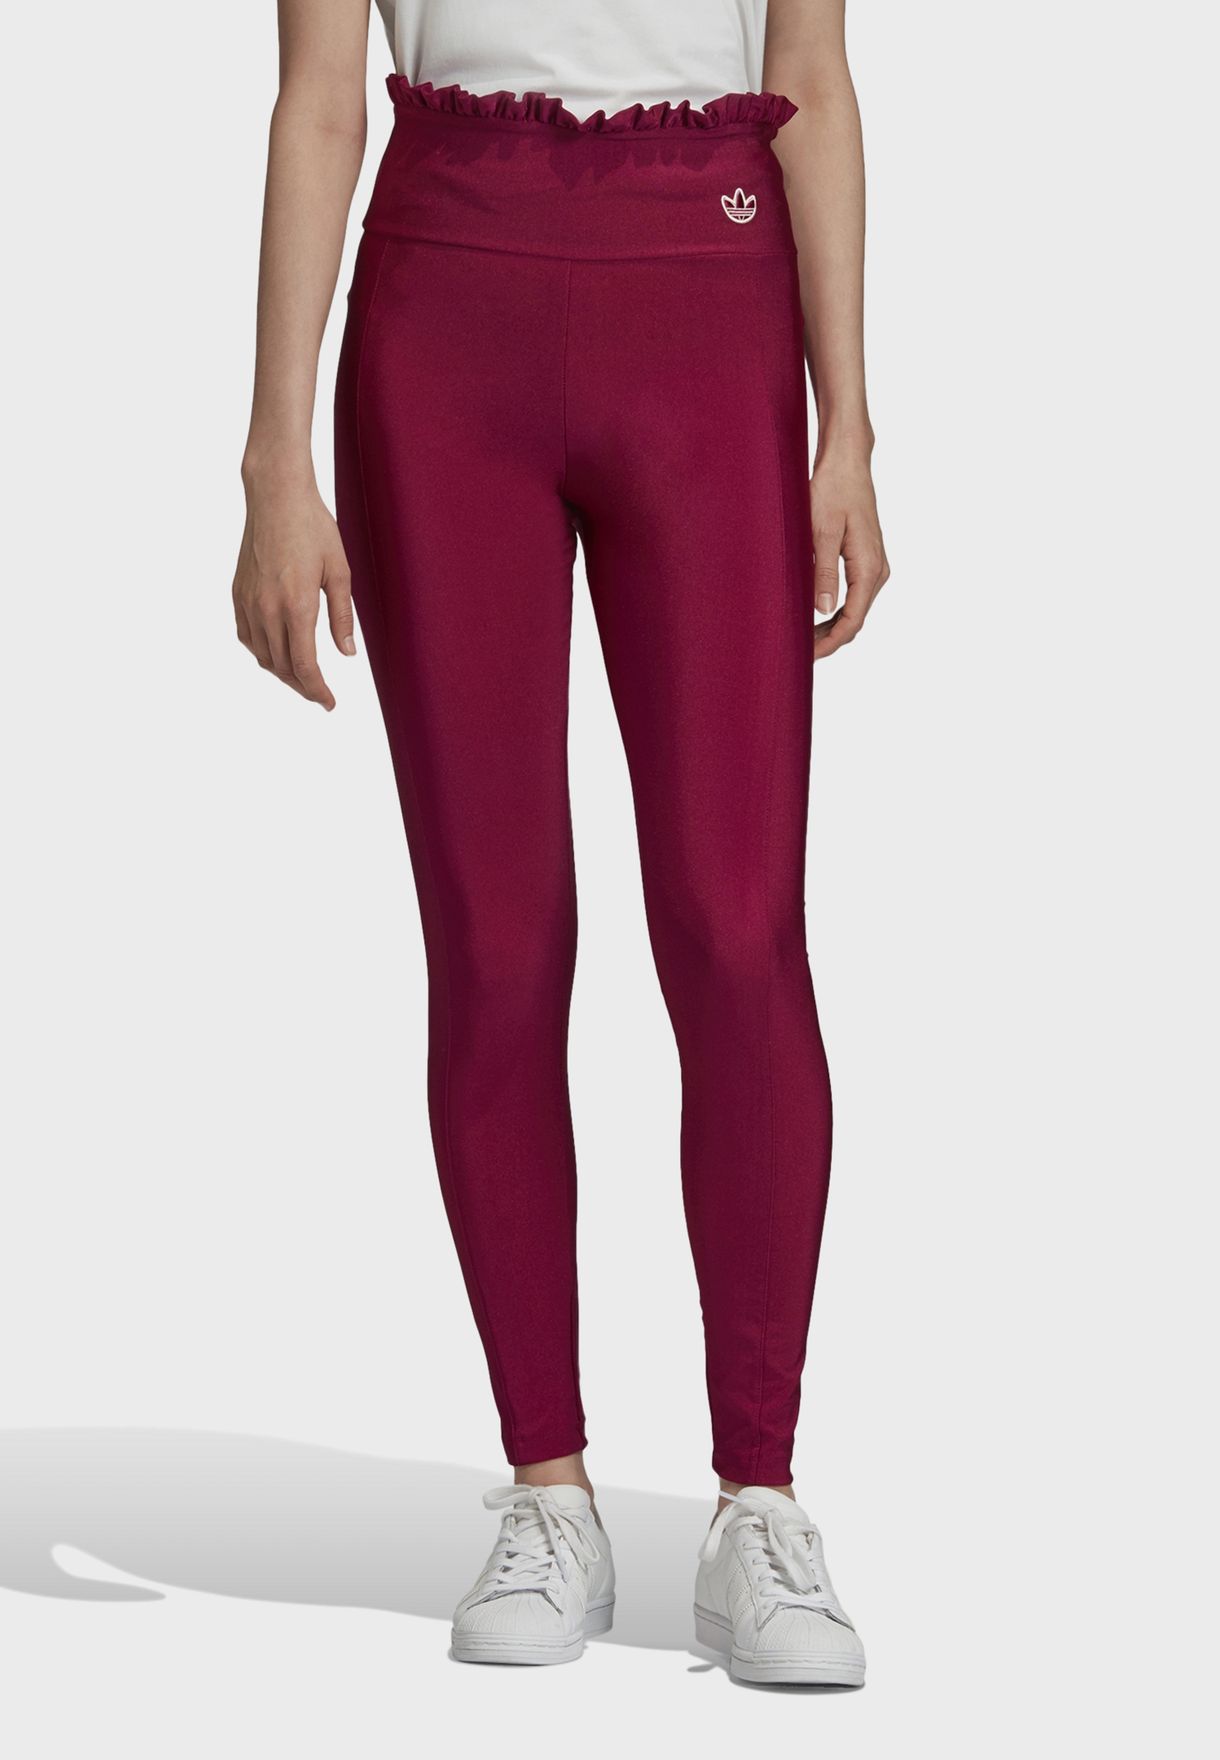 where to buy burgundy leggings